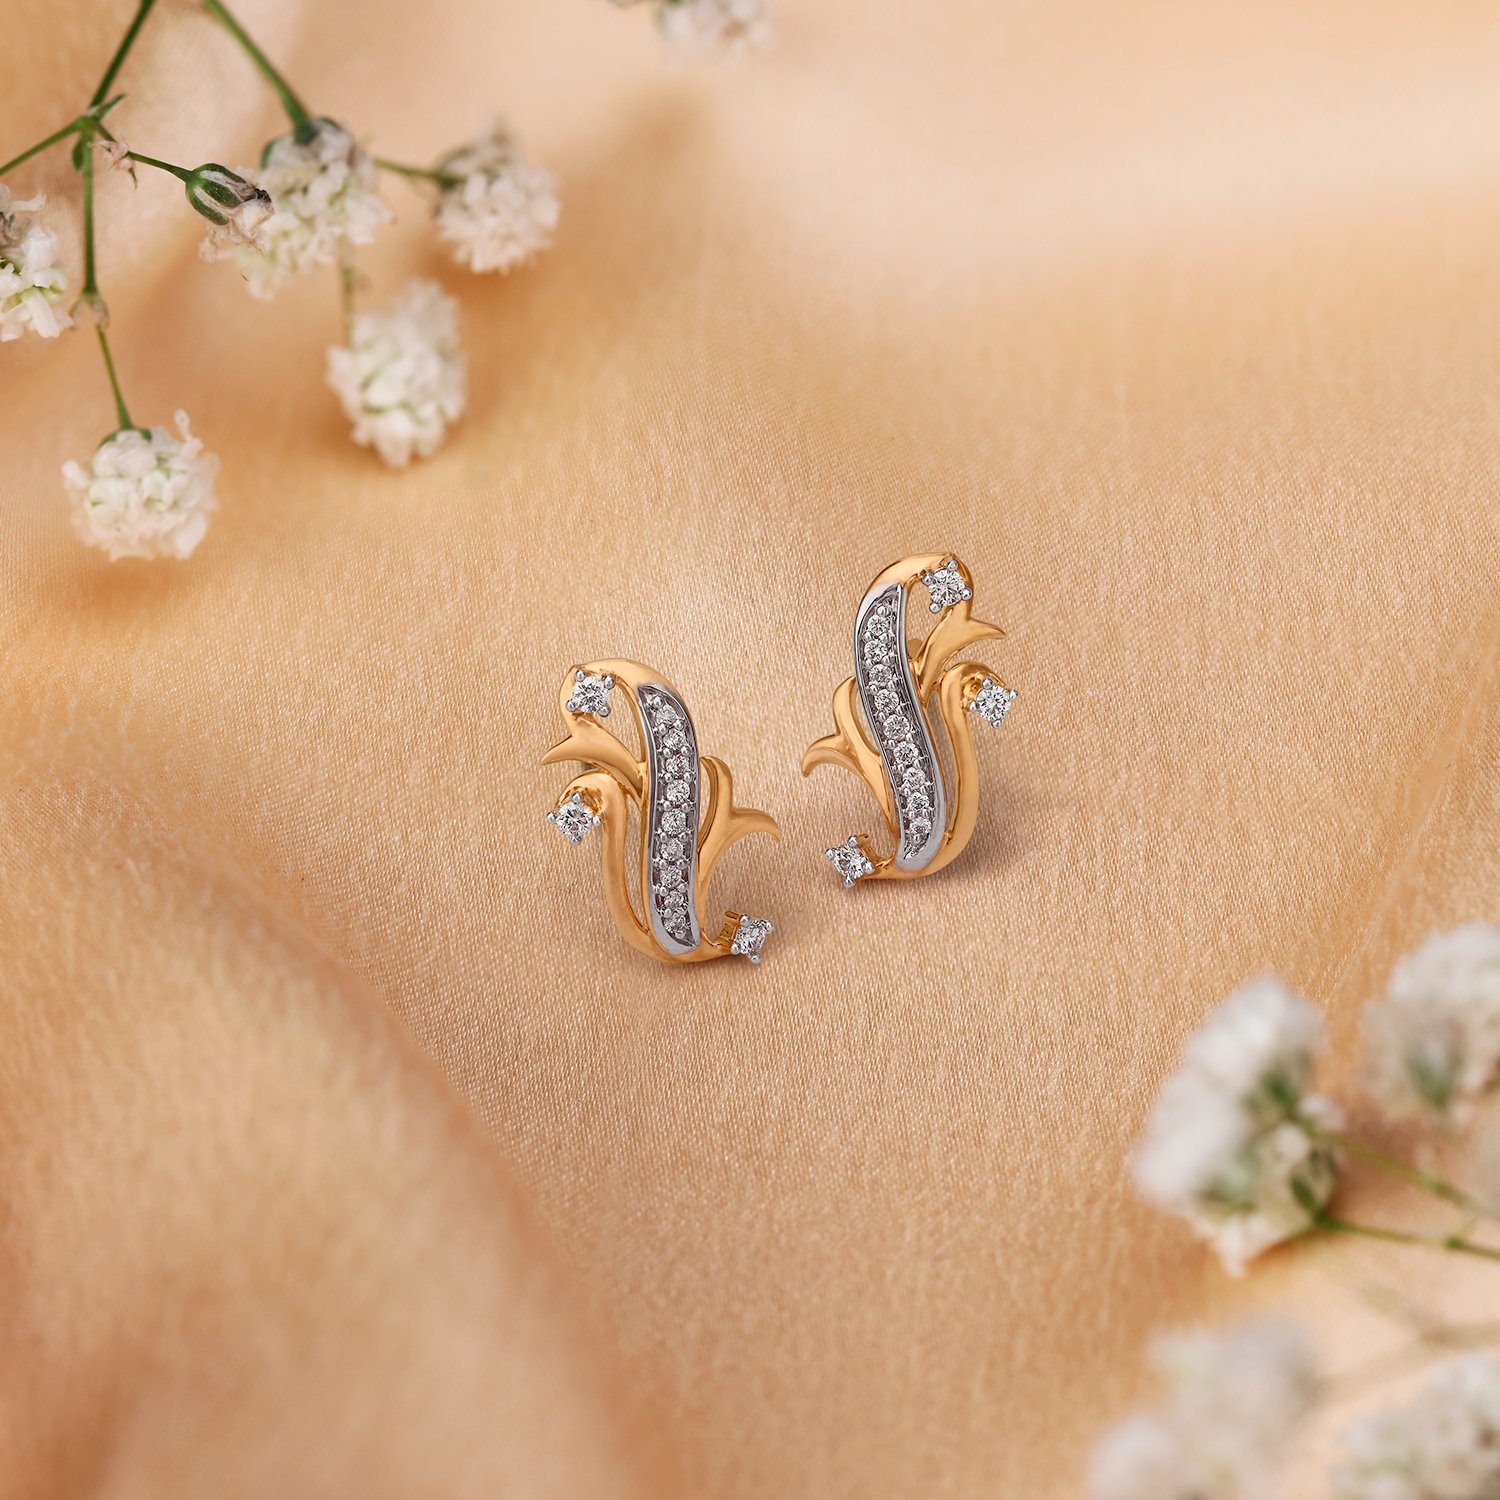 Real Diamond Earrings (18K) | Gold earrings for kids, Diamond earrings  design, Small earrings gold